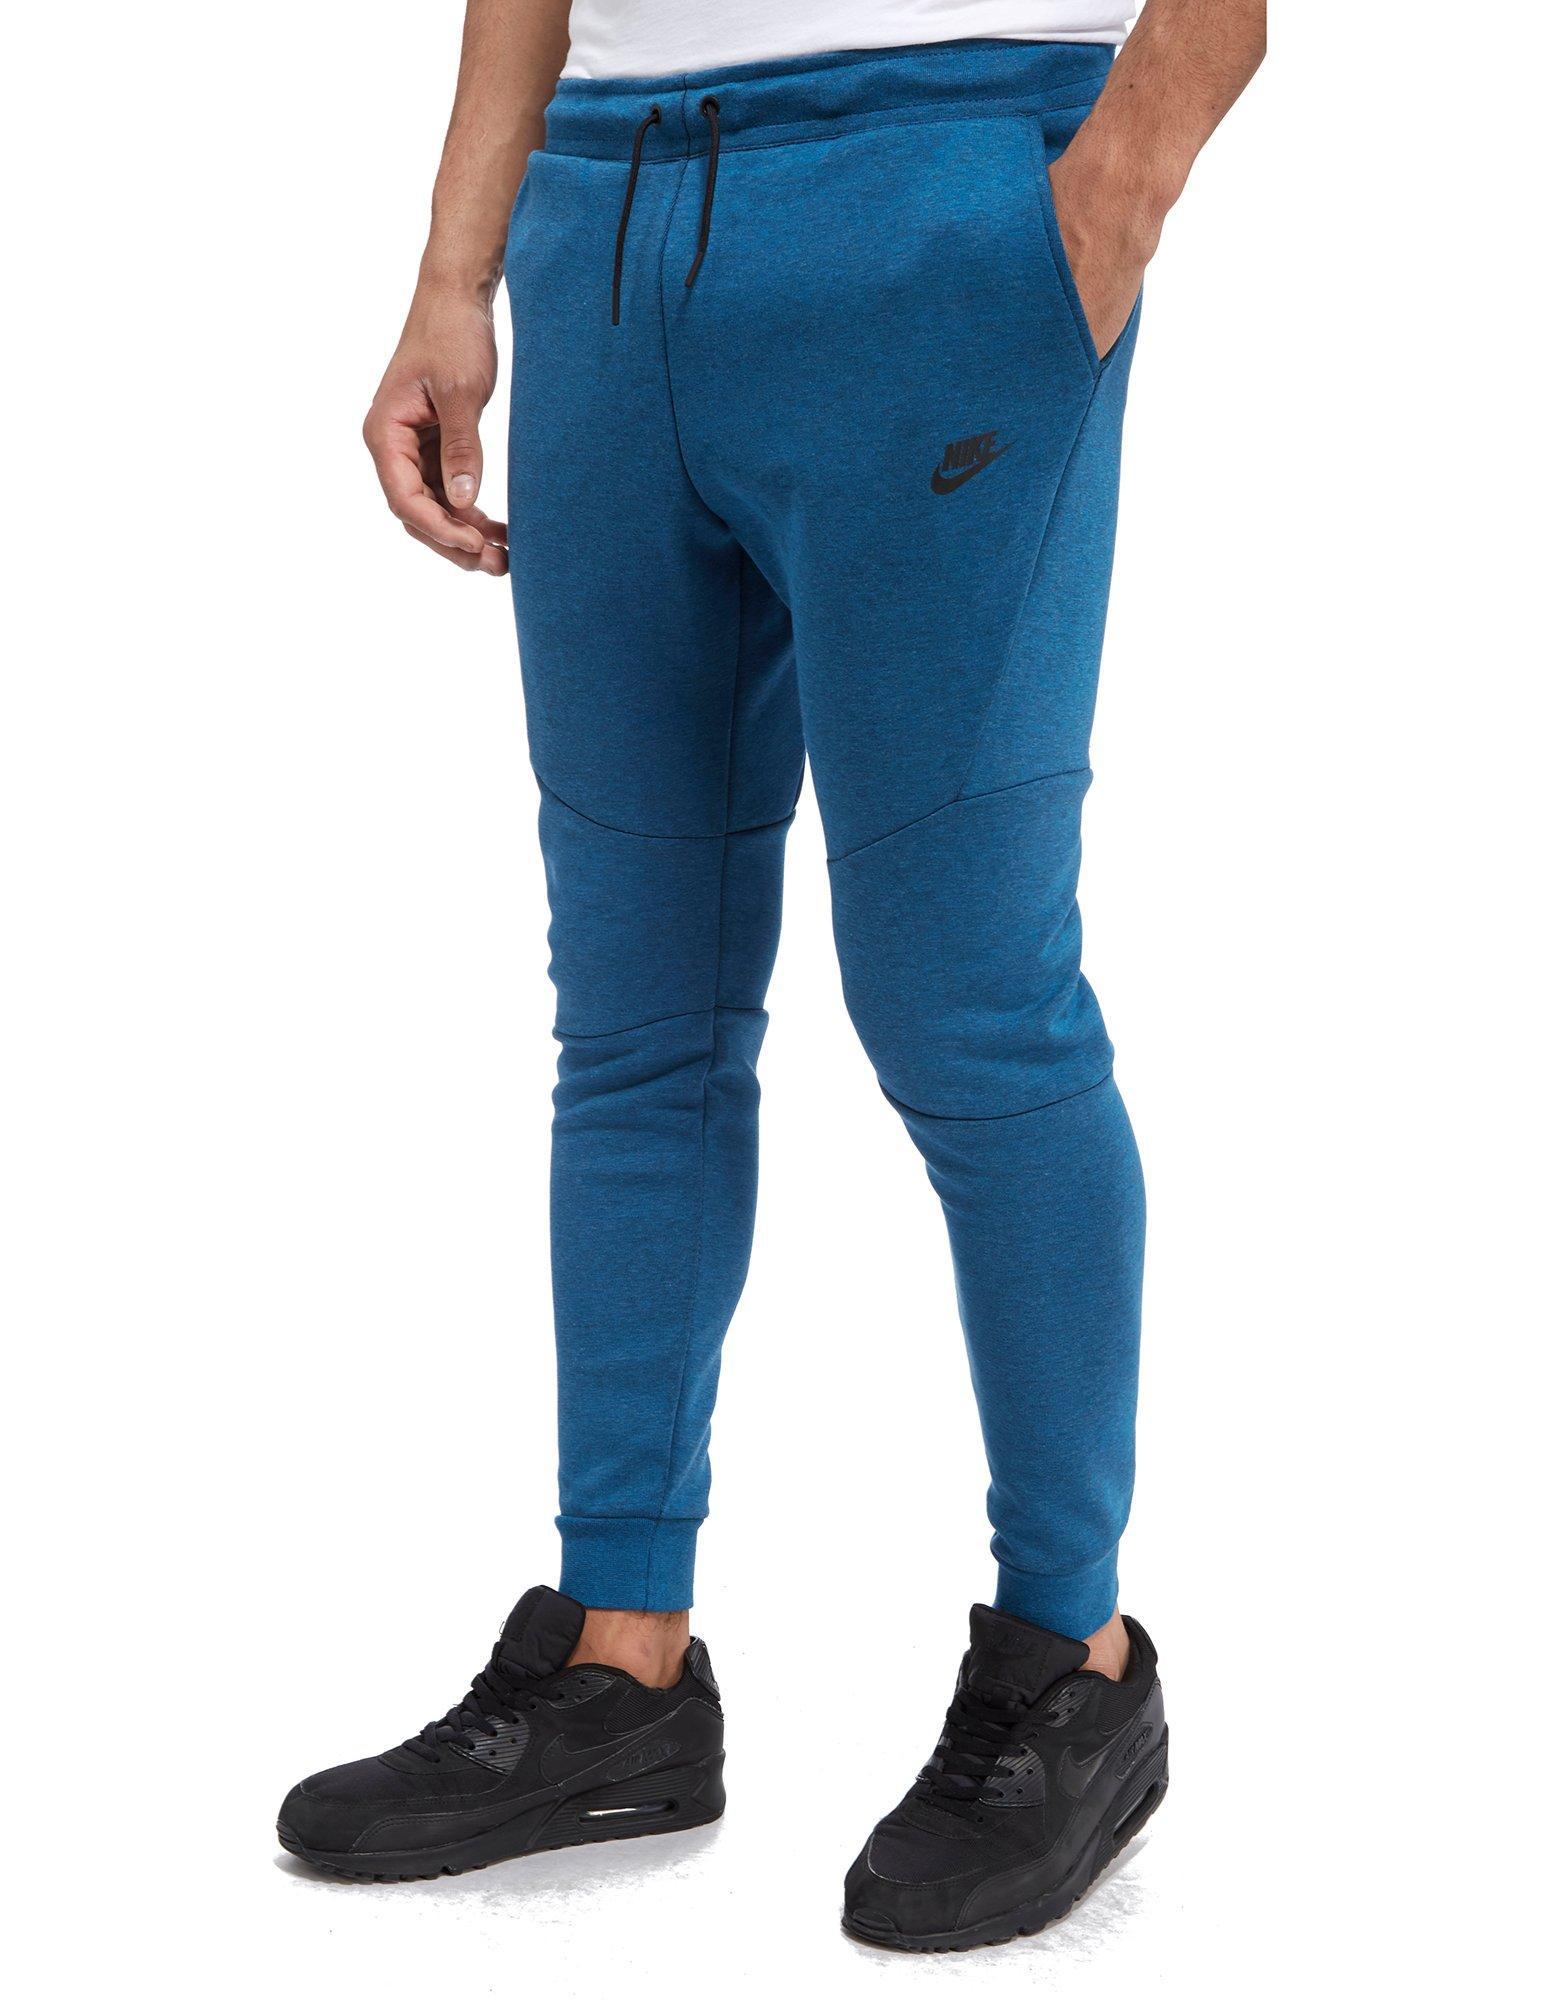 Lyst - Nike Tech Fleece Pants in Blue for Men